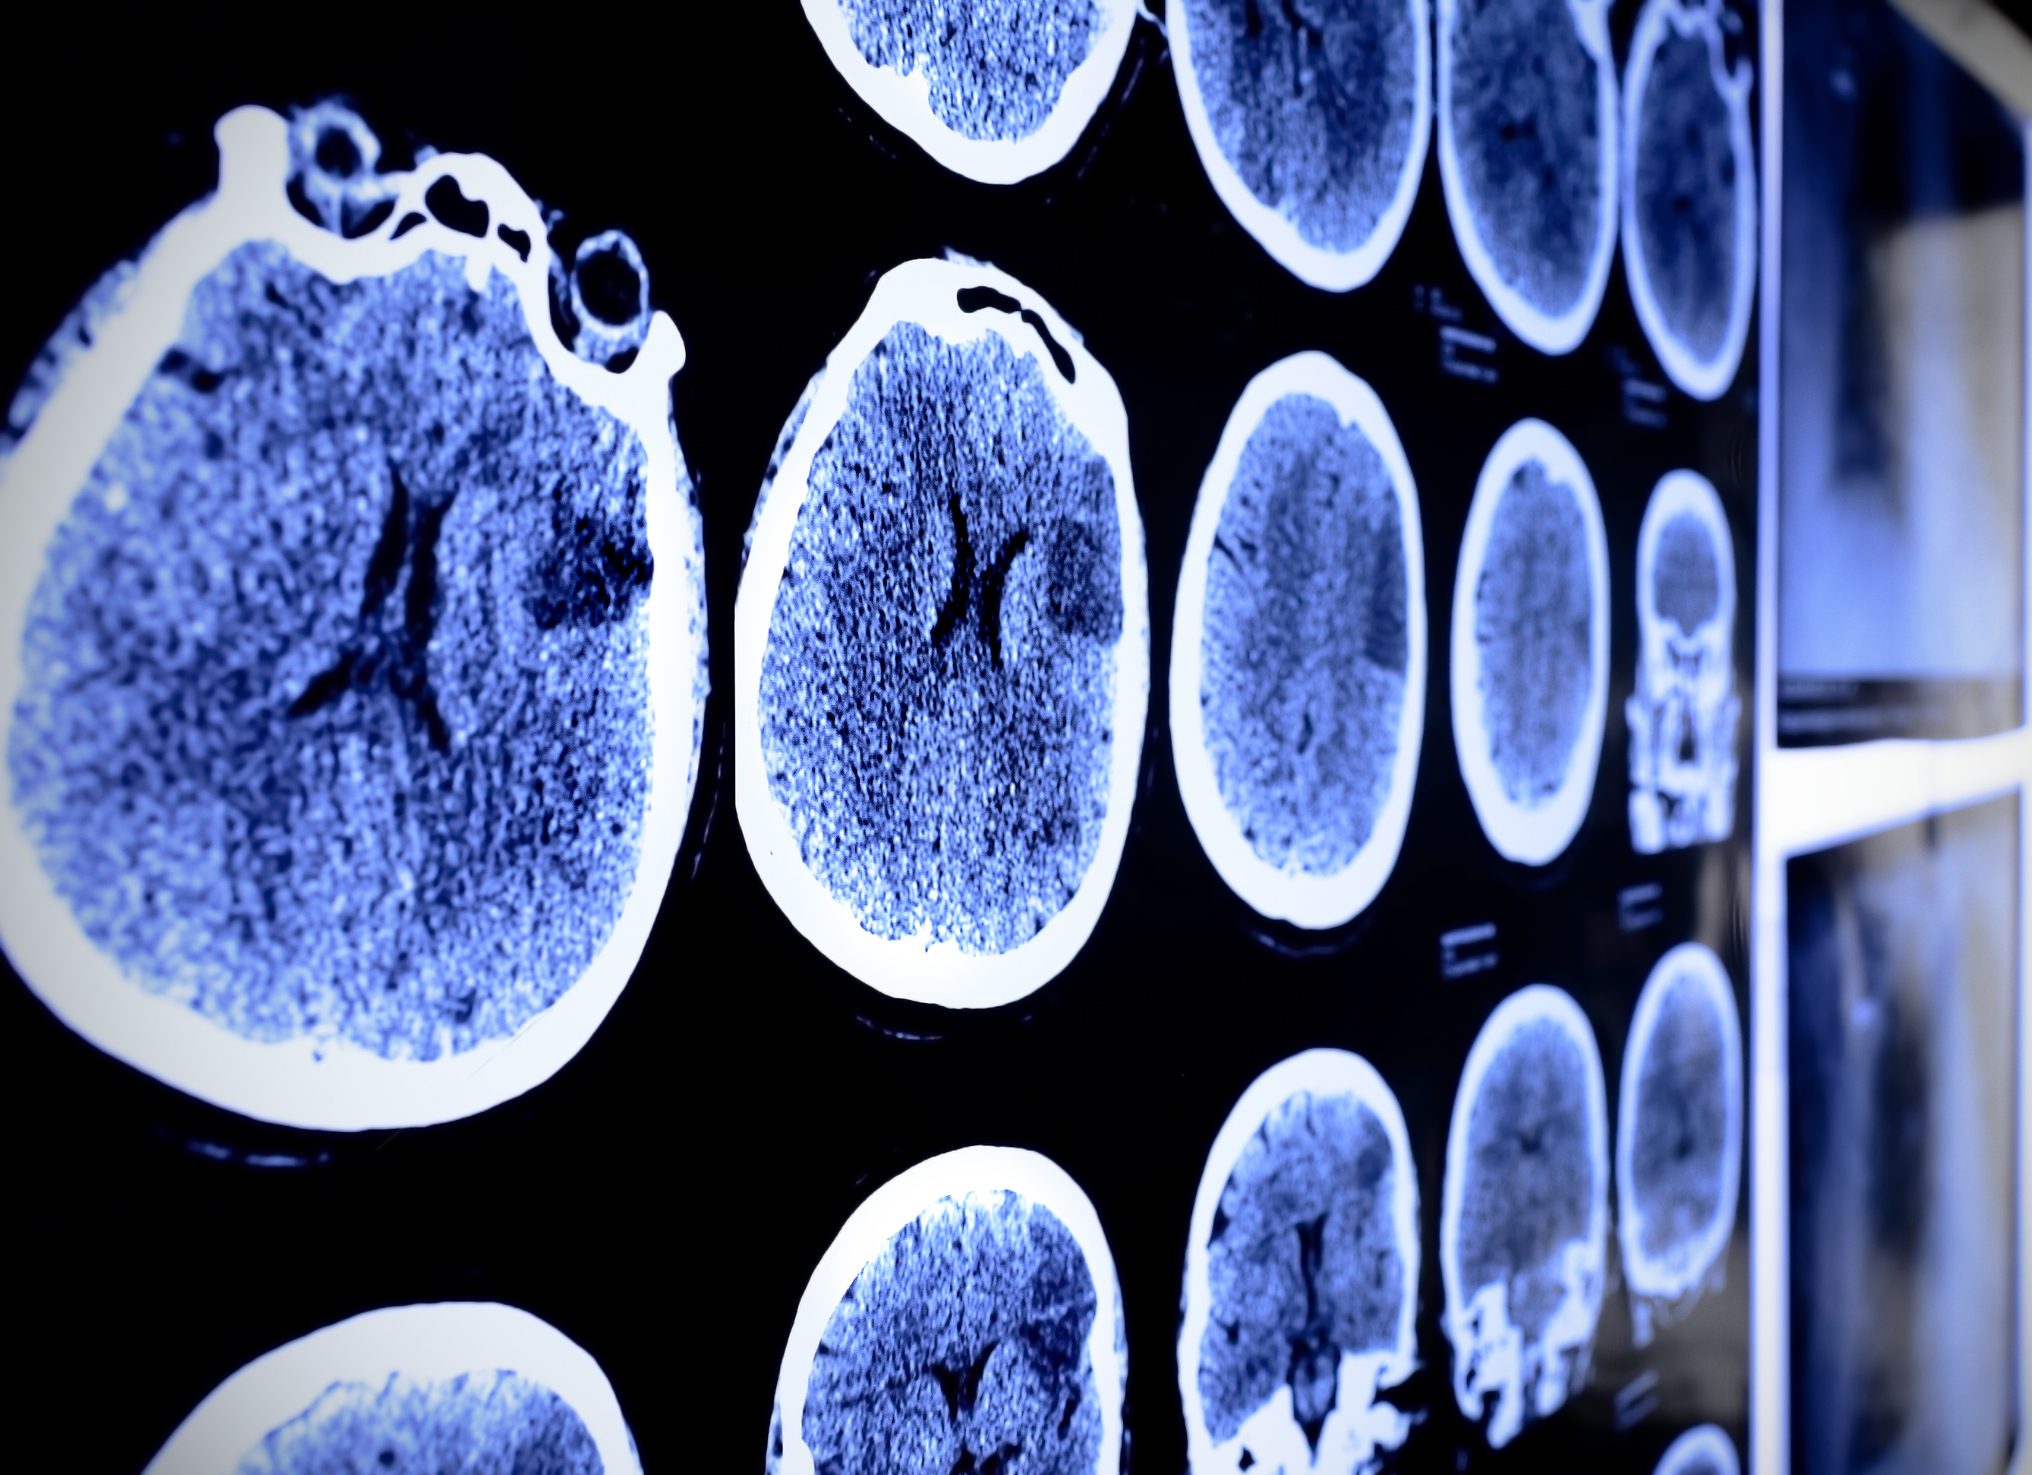 有关癌症的博客文章:了解脑瘤、脑瘤治疗和脑瘤临床试验